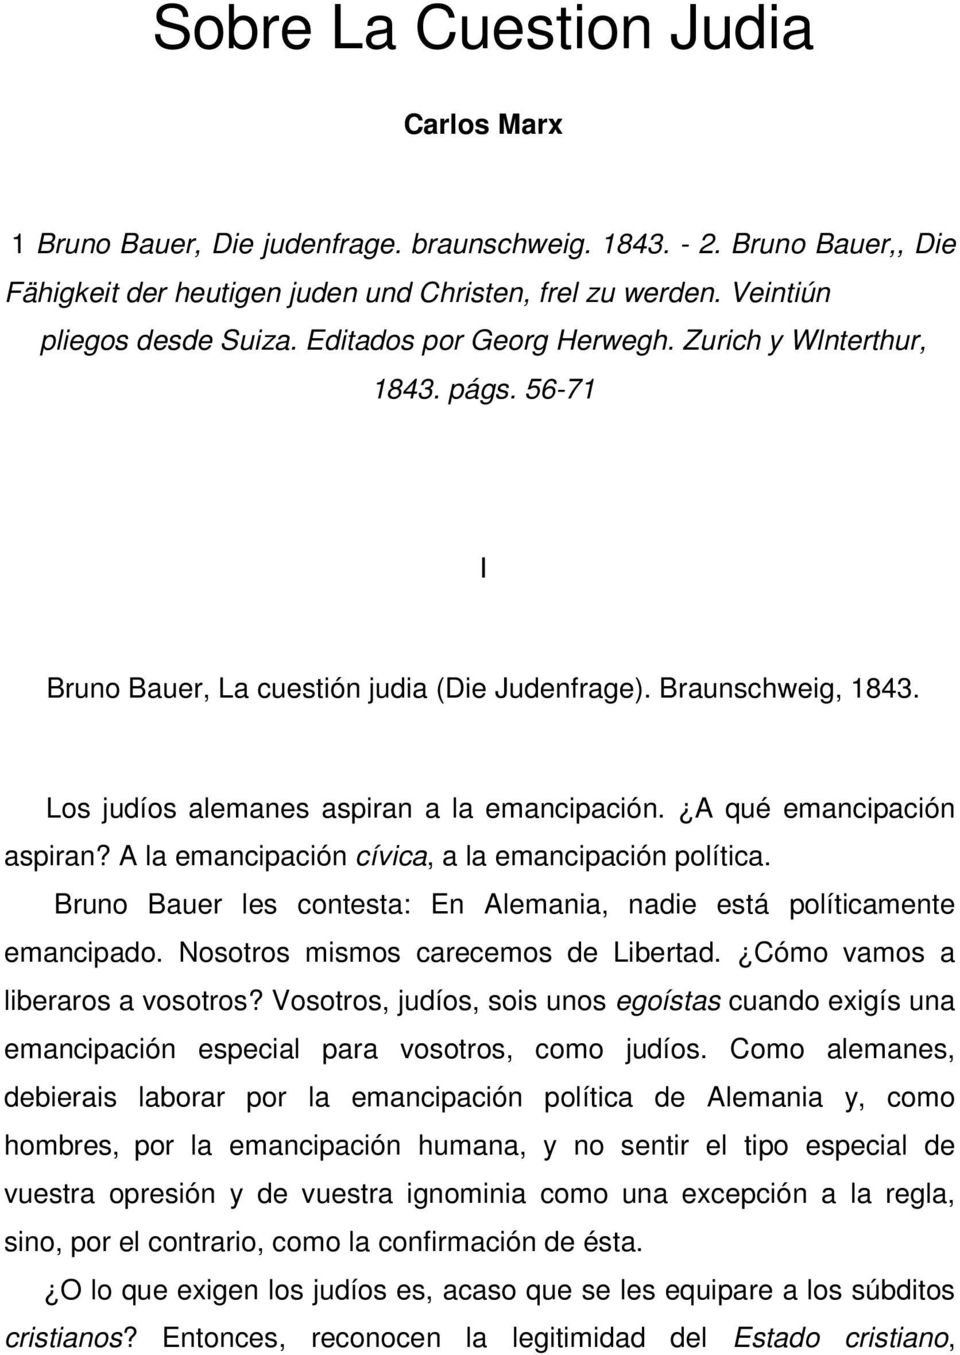 A qué emancipación aspiran? A la emancipación cívica, a la emancipación política. Bruno Bauer les contesta: En Alemania, nadie está políticamente emancipado. Nosotros mismos carecemos de Libertad.